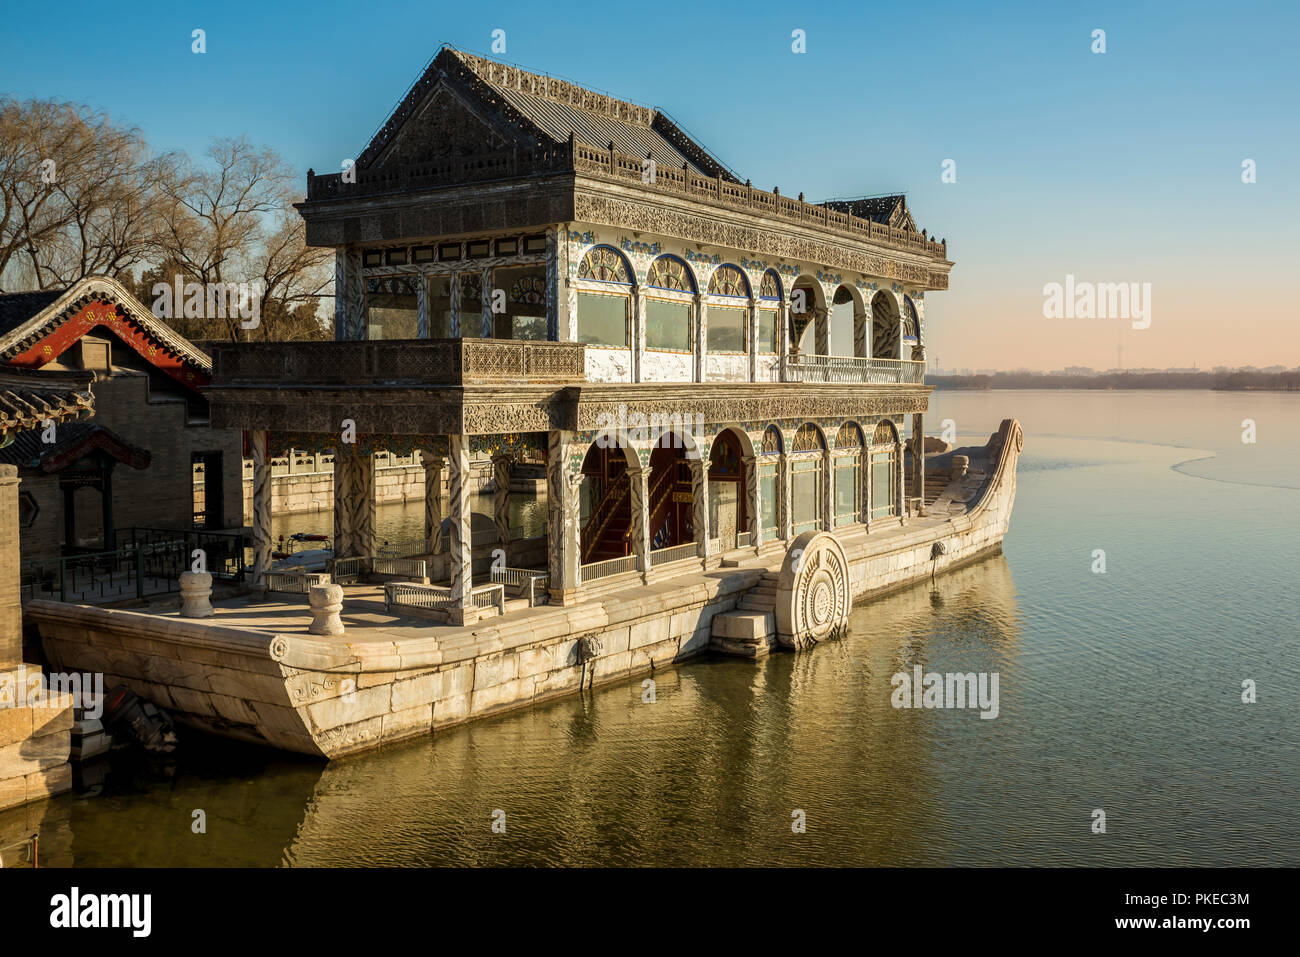 Le bateau de marbre, un pavillon au bord du lac dans le Lac de Kunming, le Palais d'été, à Beijing, Chine Banque D'Images